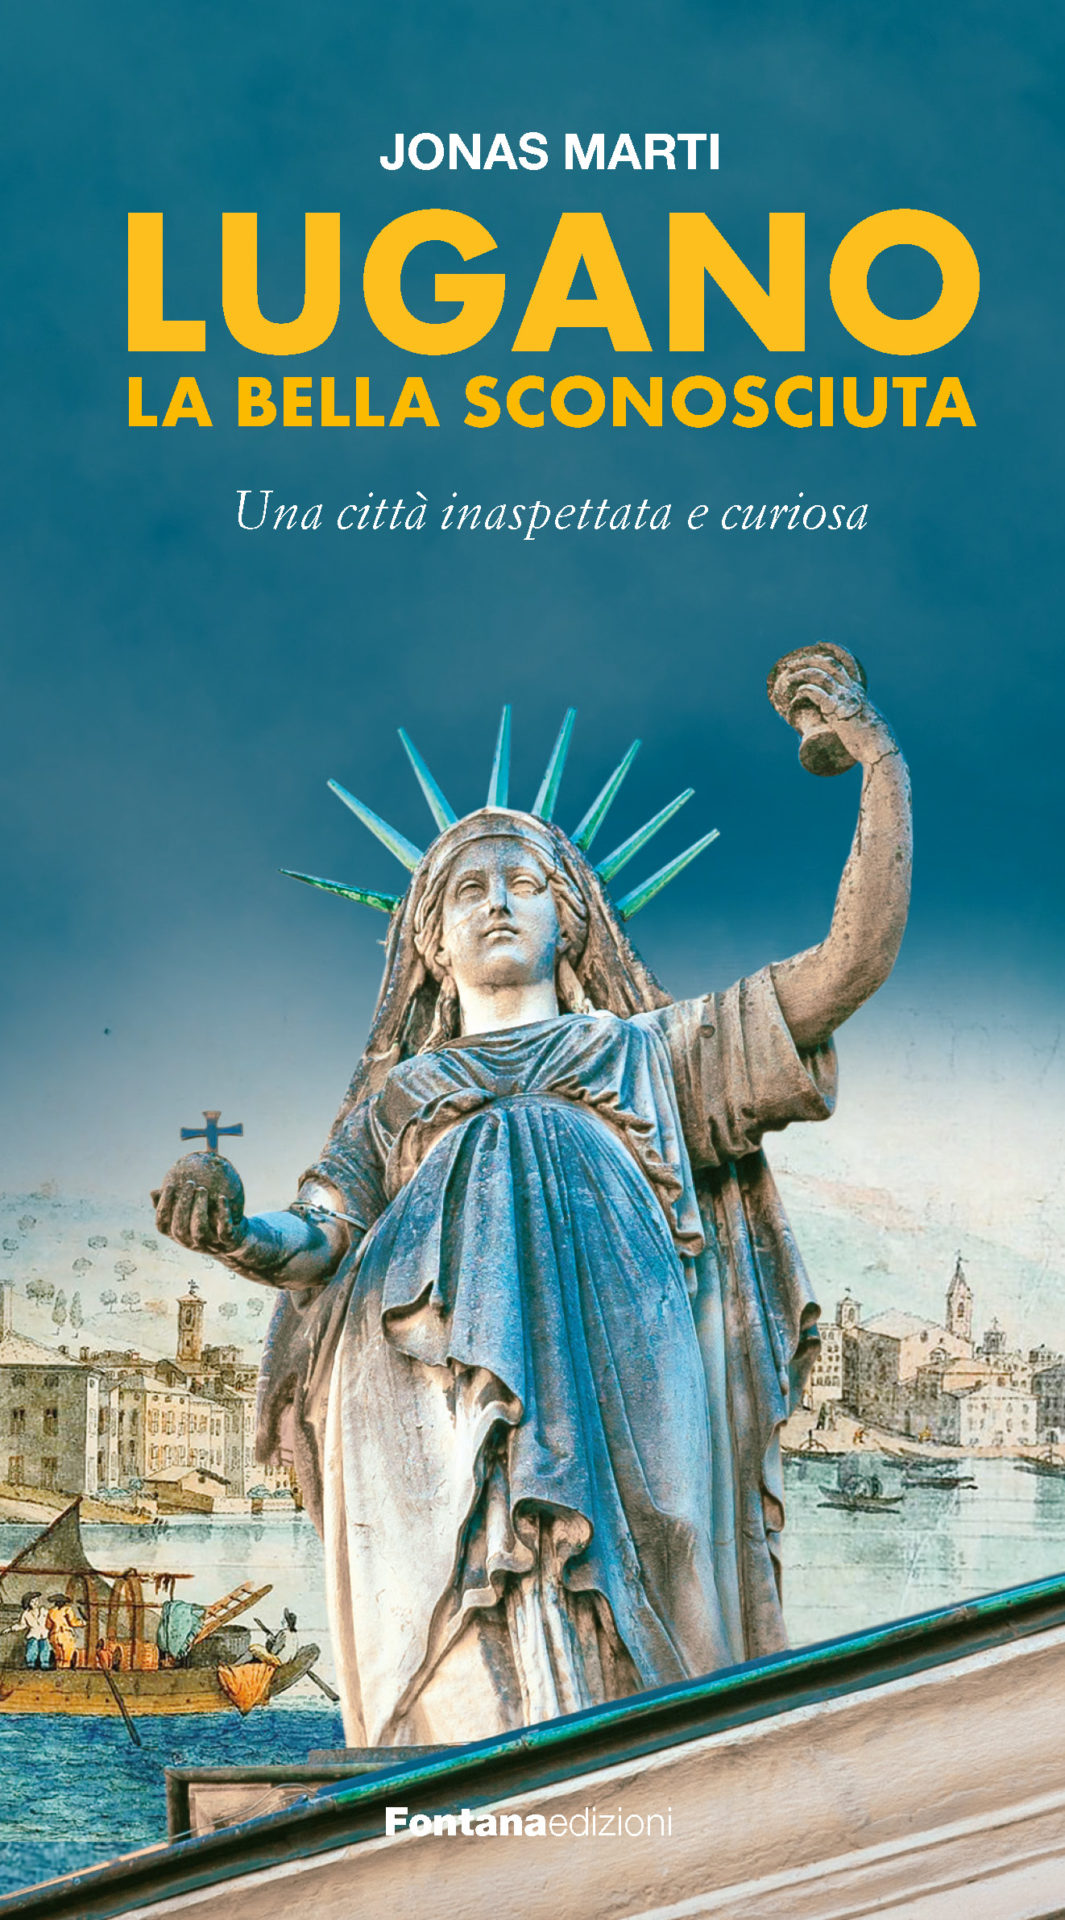 Copertina del libro di Jonas Marti: Lugano la bella sconosciuta